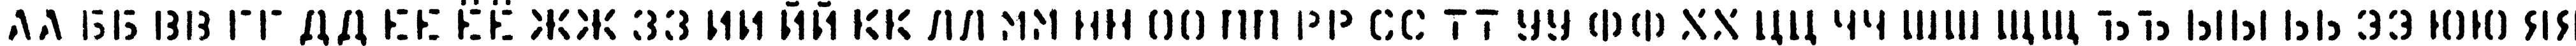 Пример написания русского алфавита шрифтом KartonC